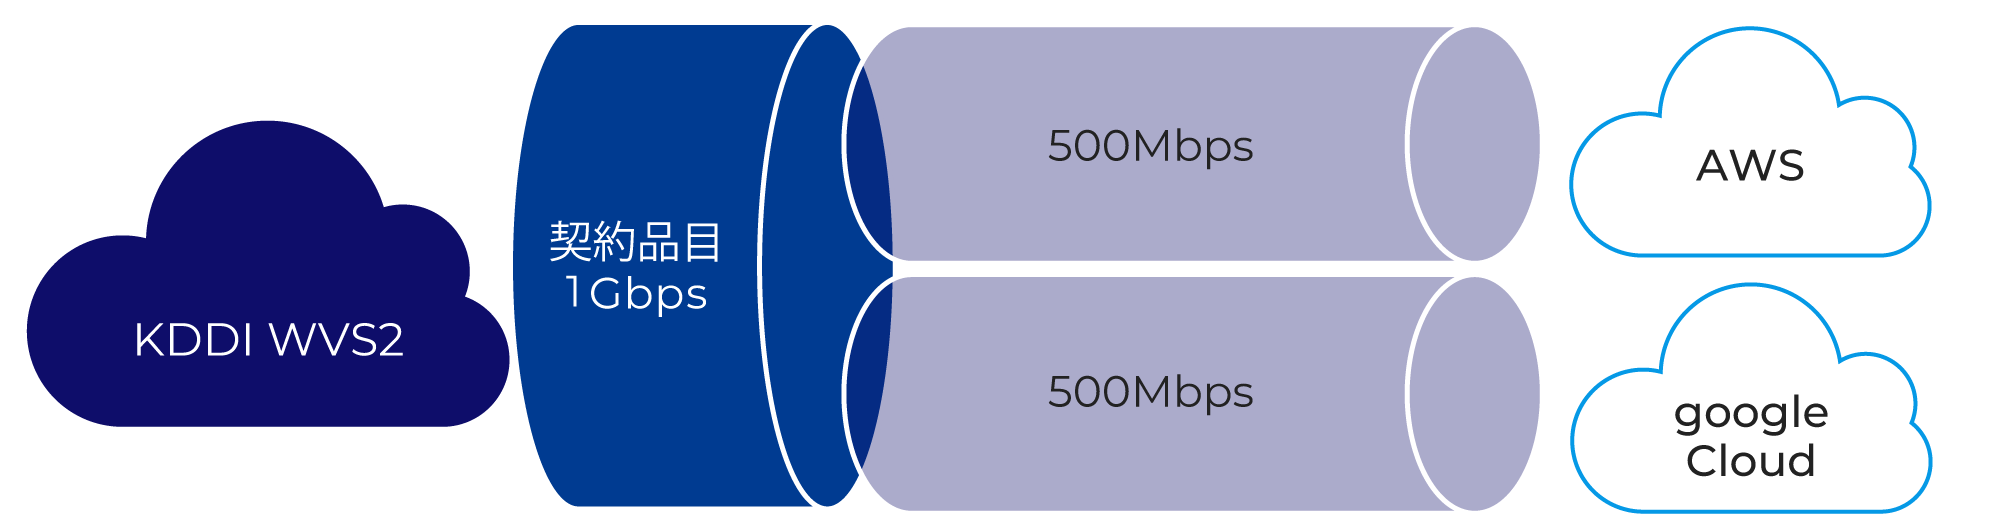 契約品目1Gbps、AWSへ500Mbps、Google Cloud へ500Mbps接続の場合